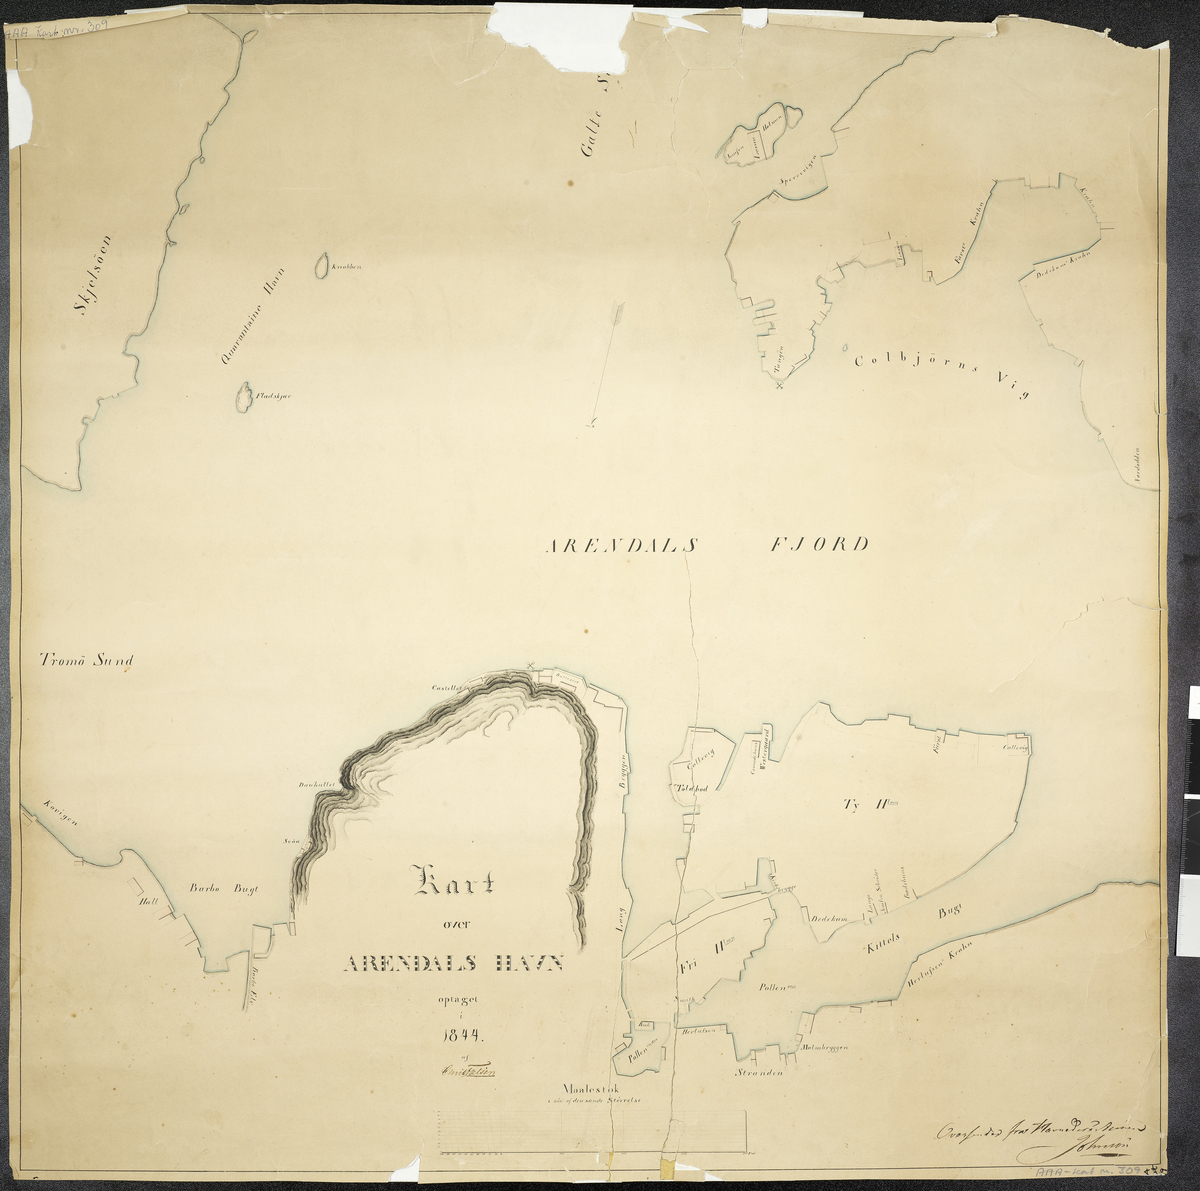 Kart over Arendals Havn